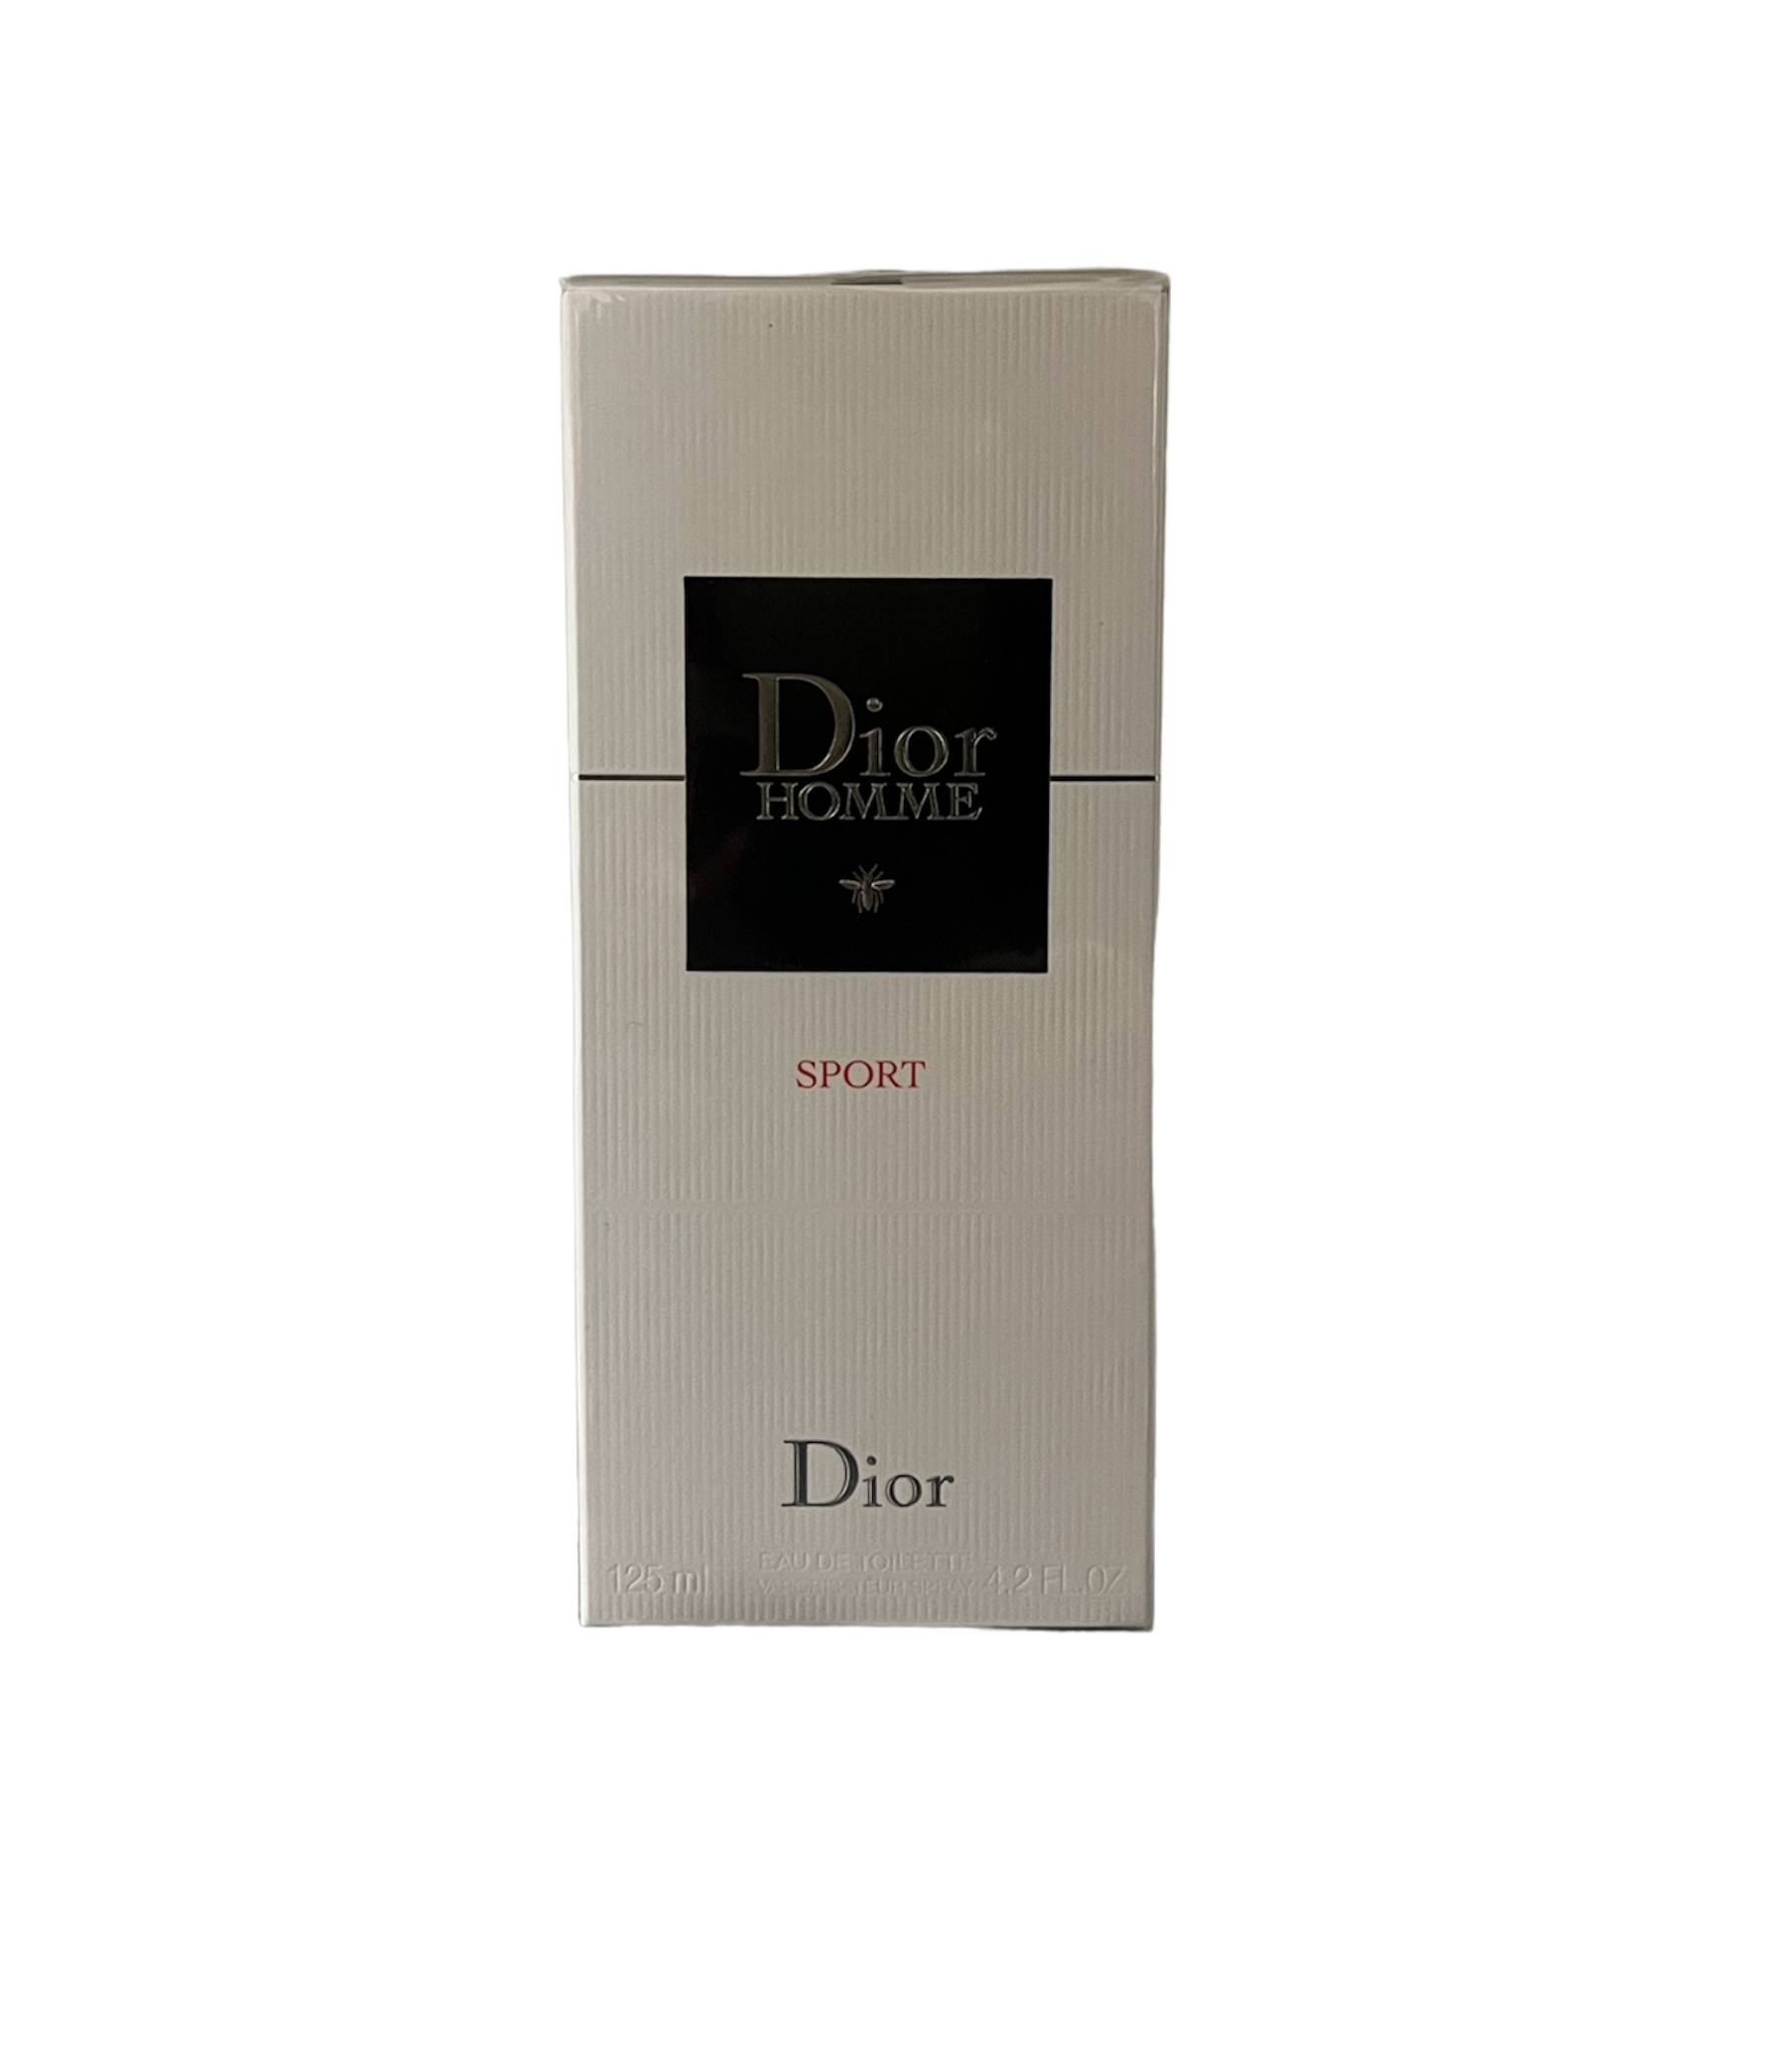 Dior - Homme Sport Eau de Toilette